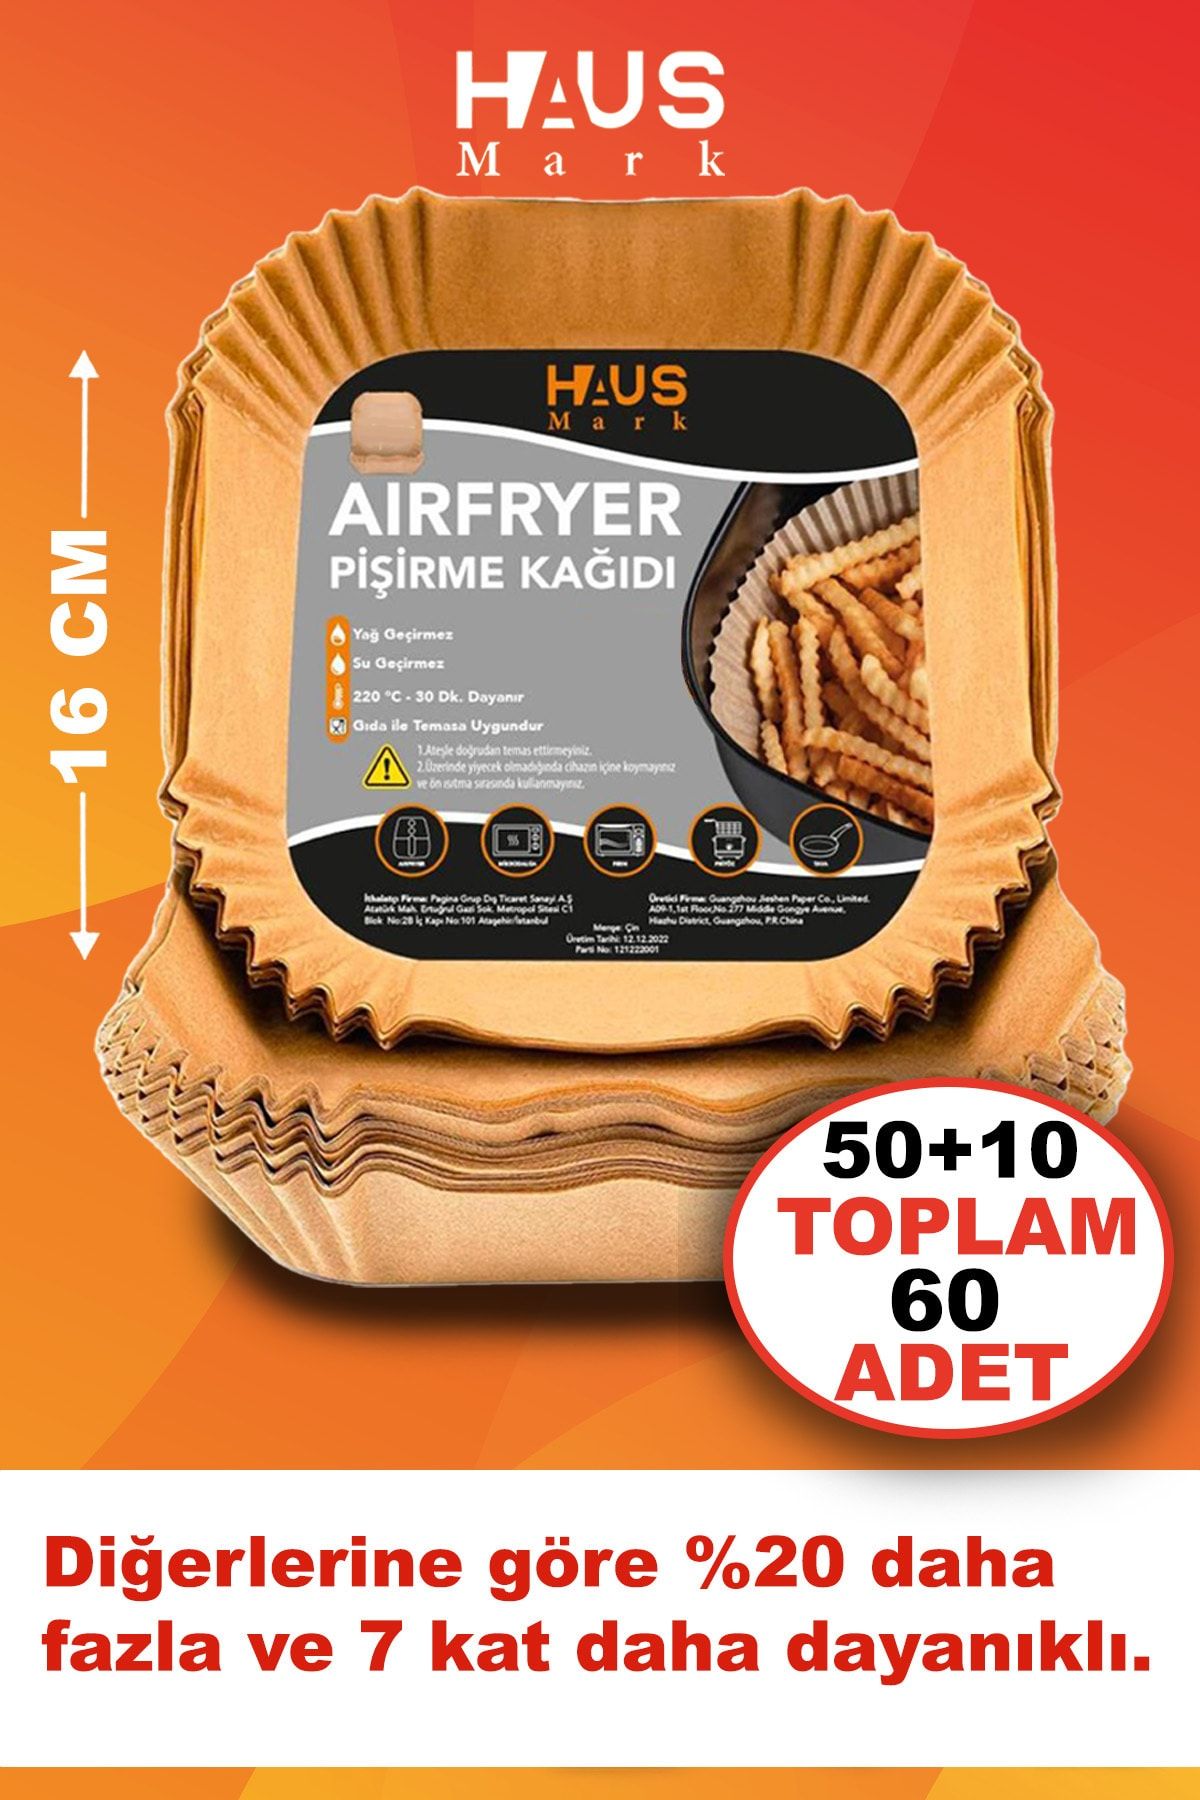 HAUSMARK Airfryer Pişirme Kağıdı 60 Adet 16cm Kare Yağsız Hava Fritözü Yağlı Kağıt Airfryer Philips Tefal Mi